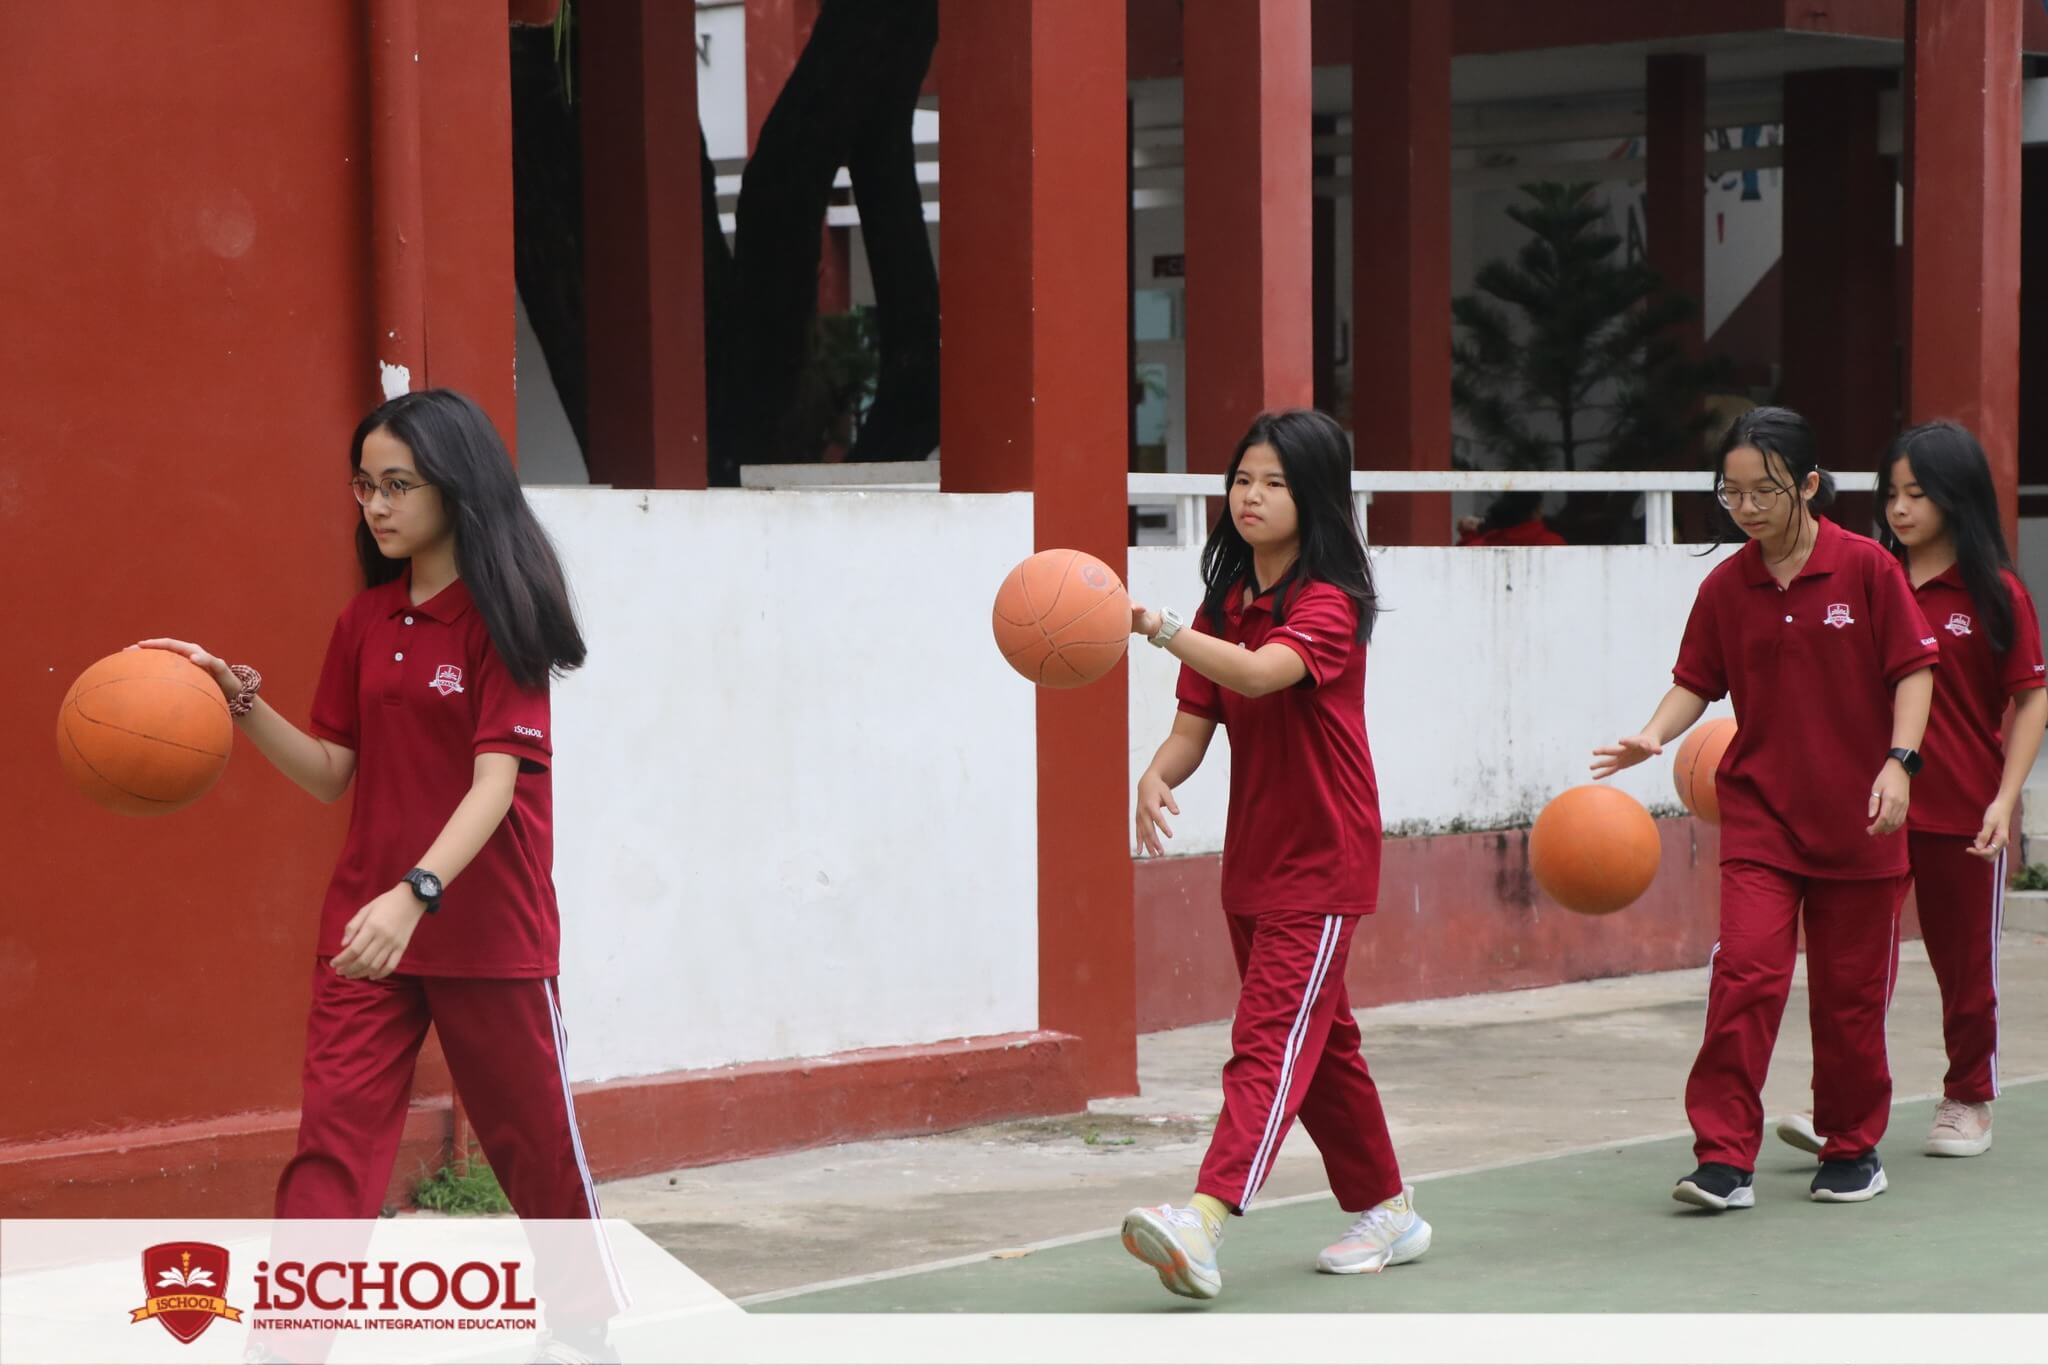 Trường Tiểu Học, THCS Và THPT Ischool - Quy Nhơn